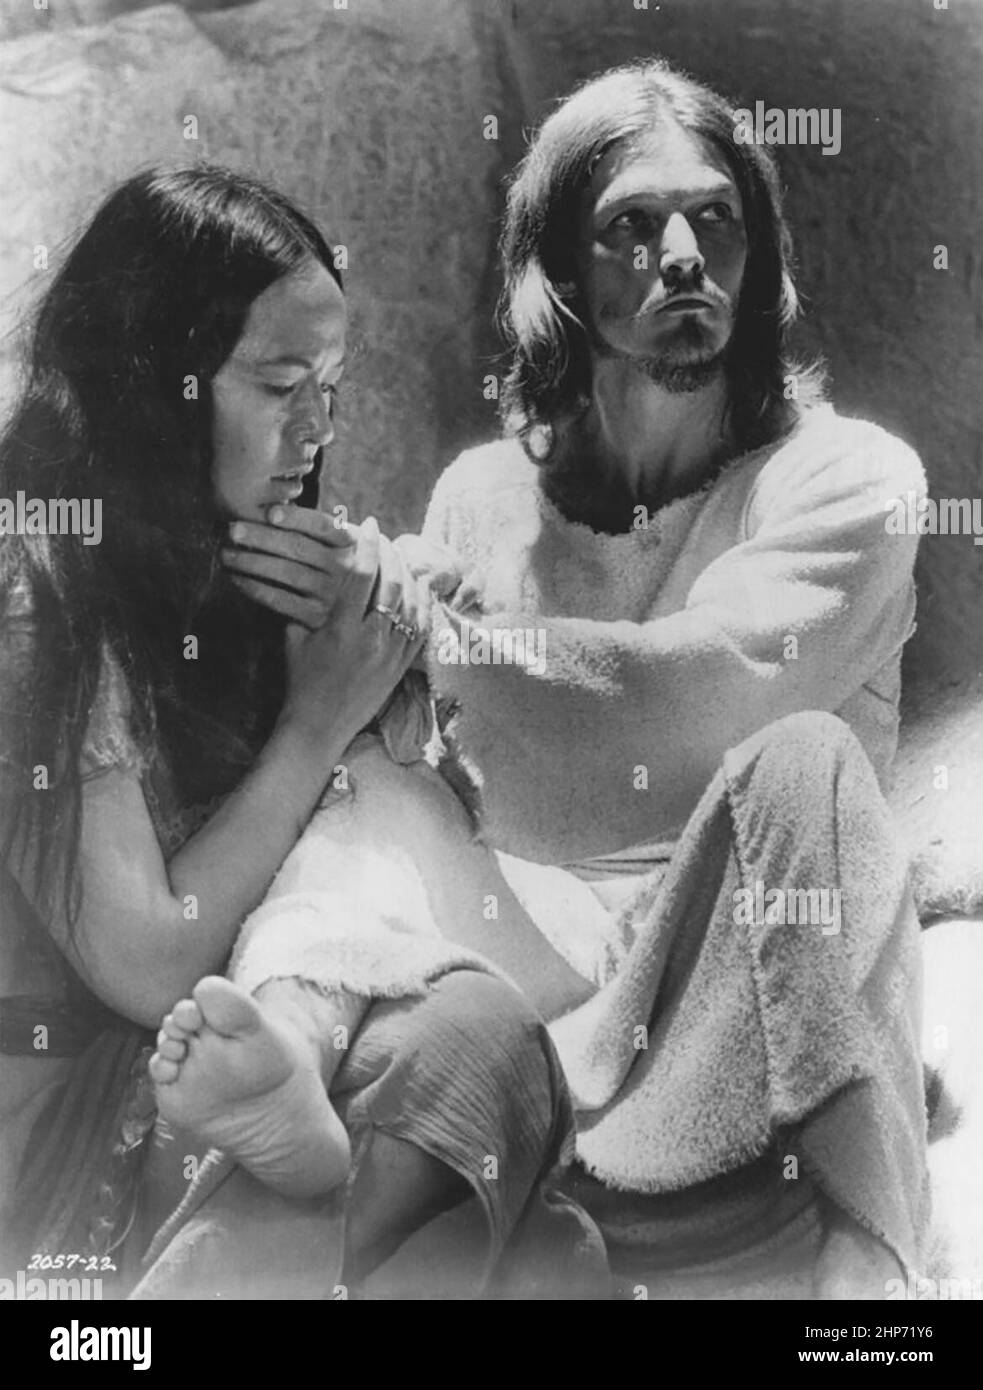 Photo publicitaire des artistes américains Yvonne Elliman et Ted Neeley faisant la promotion de leurs rôles dans le long métrage de 1973 Jesus Christ Superstar Banque D'Images